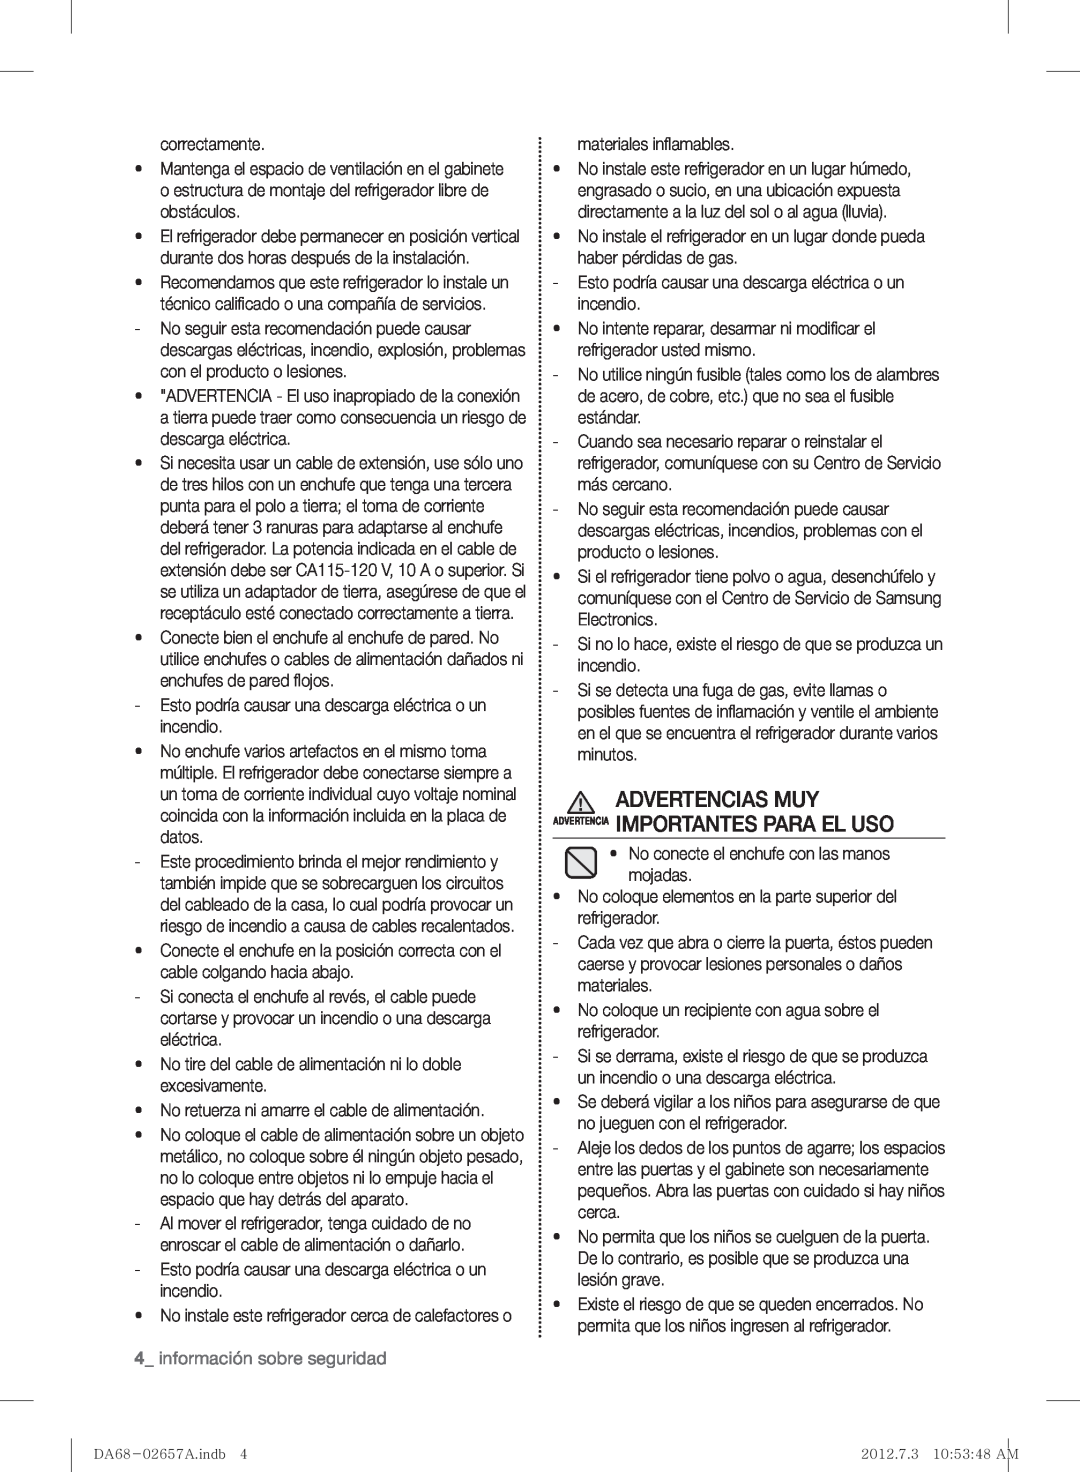 Samsung RF221NCTABC user manual Advertencias Muy Advertencia Importantes Para El Uso, información sobre seguridad 